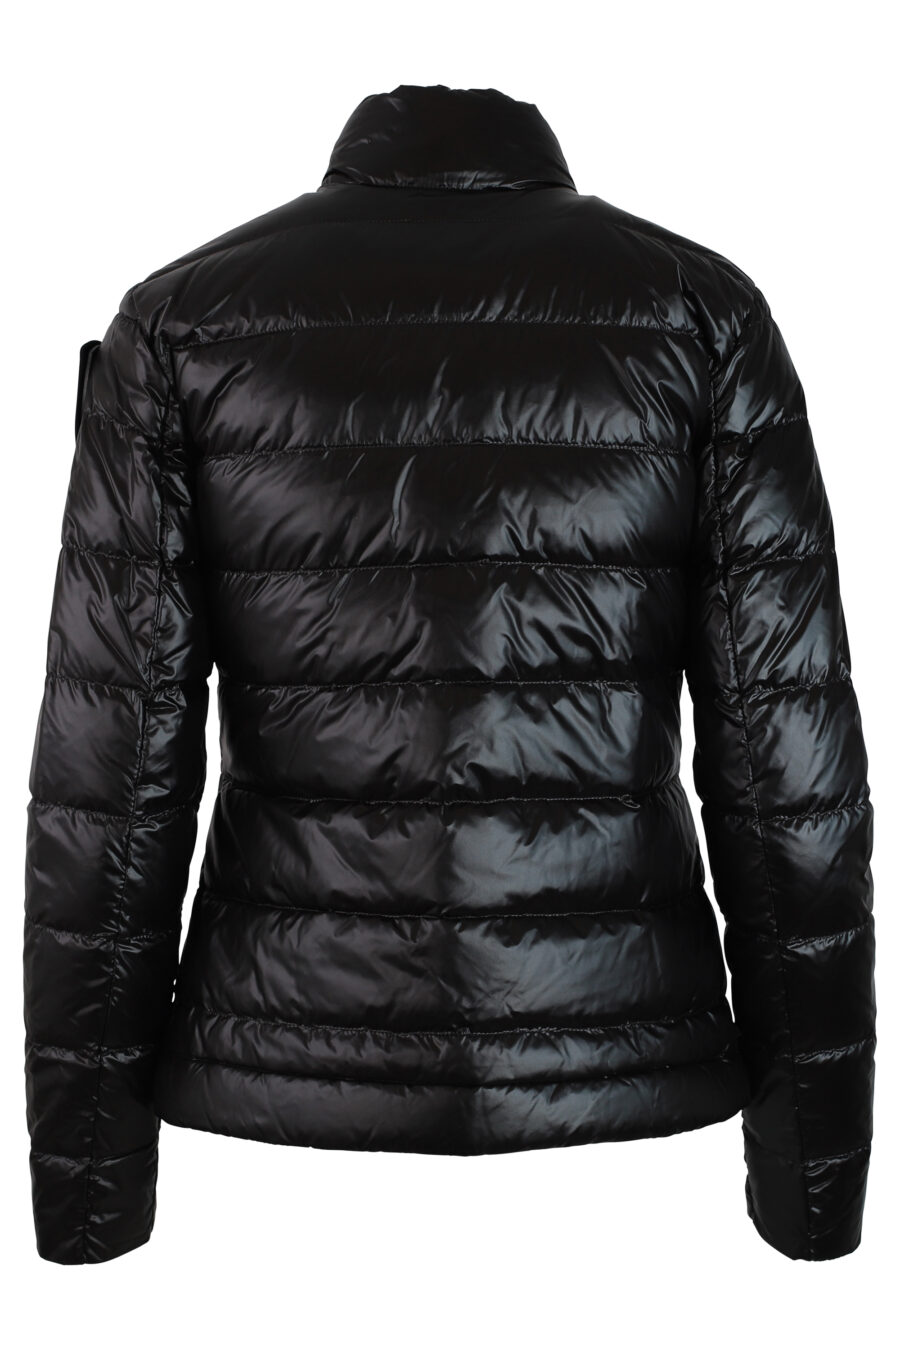 Kurze schwarze Jacke mit geraden Linien und Aufnäher - IMG 0207